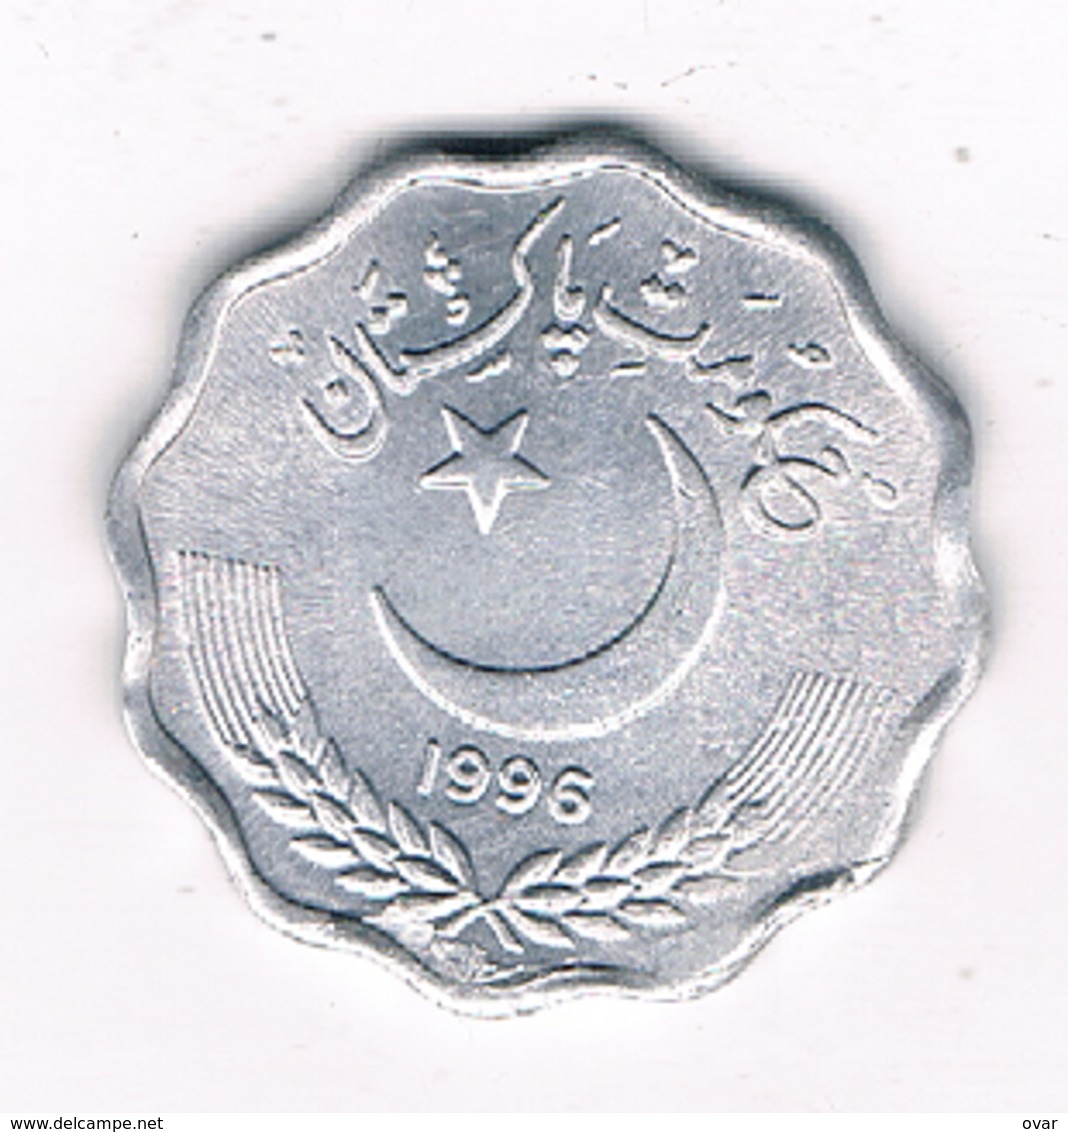 10 POISHA 1996 PAKISTAN /8687/ - Pakistan